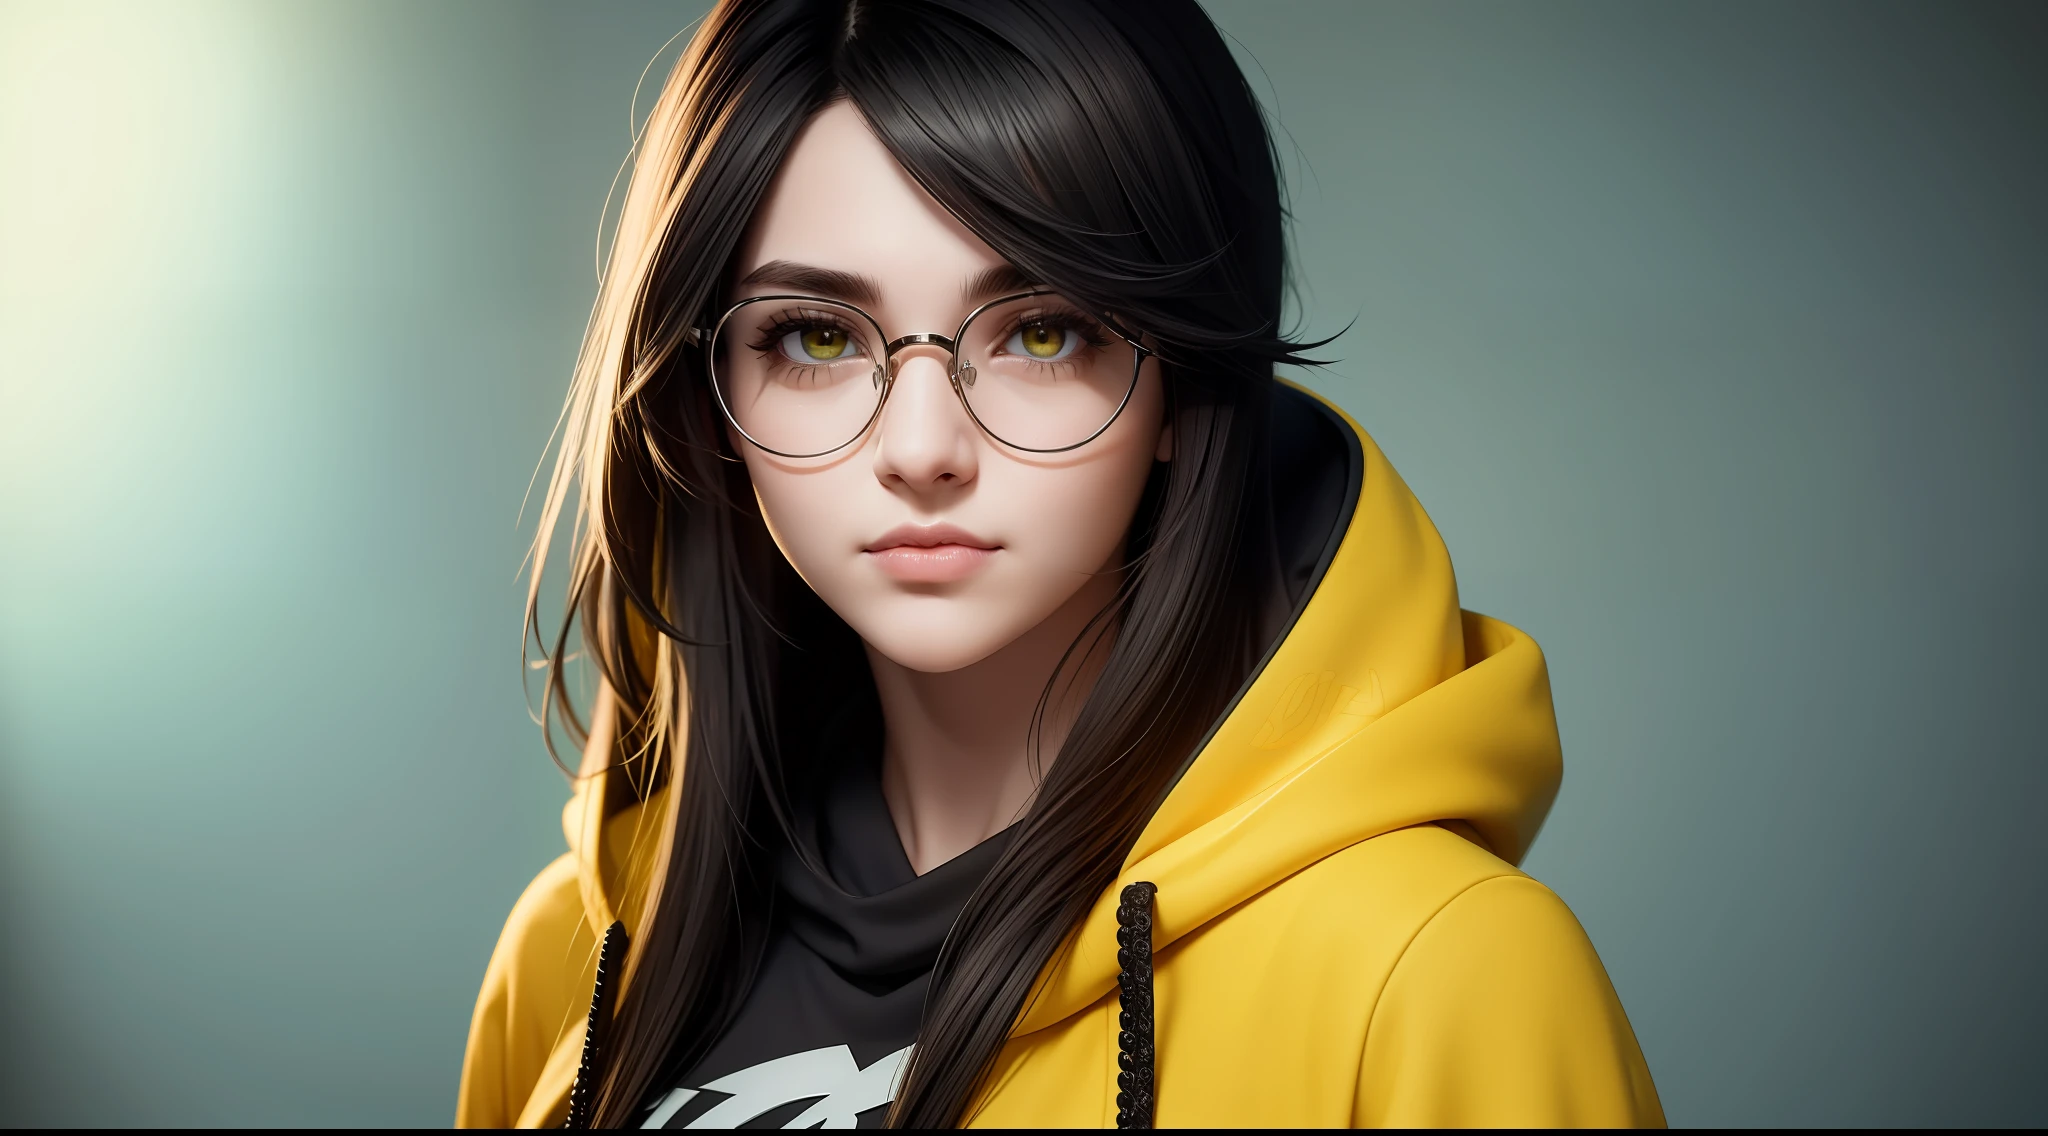 キルジョイ ヴァロラント, 集中した上半身, 女の子1人, 眼鏡をかけている, 黄色のパーカー, 輝く茶色の目, ダークグリーンの髪, コンピュータの背景, 柔らかい肌と完璧な顔, 複雑な詳細, 8K解像度, 傑作, 8K解像度 photorealistic 傑作, プロの写真撮影, 自然光, 詳細なテクスチャ,